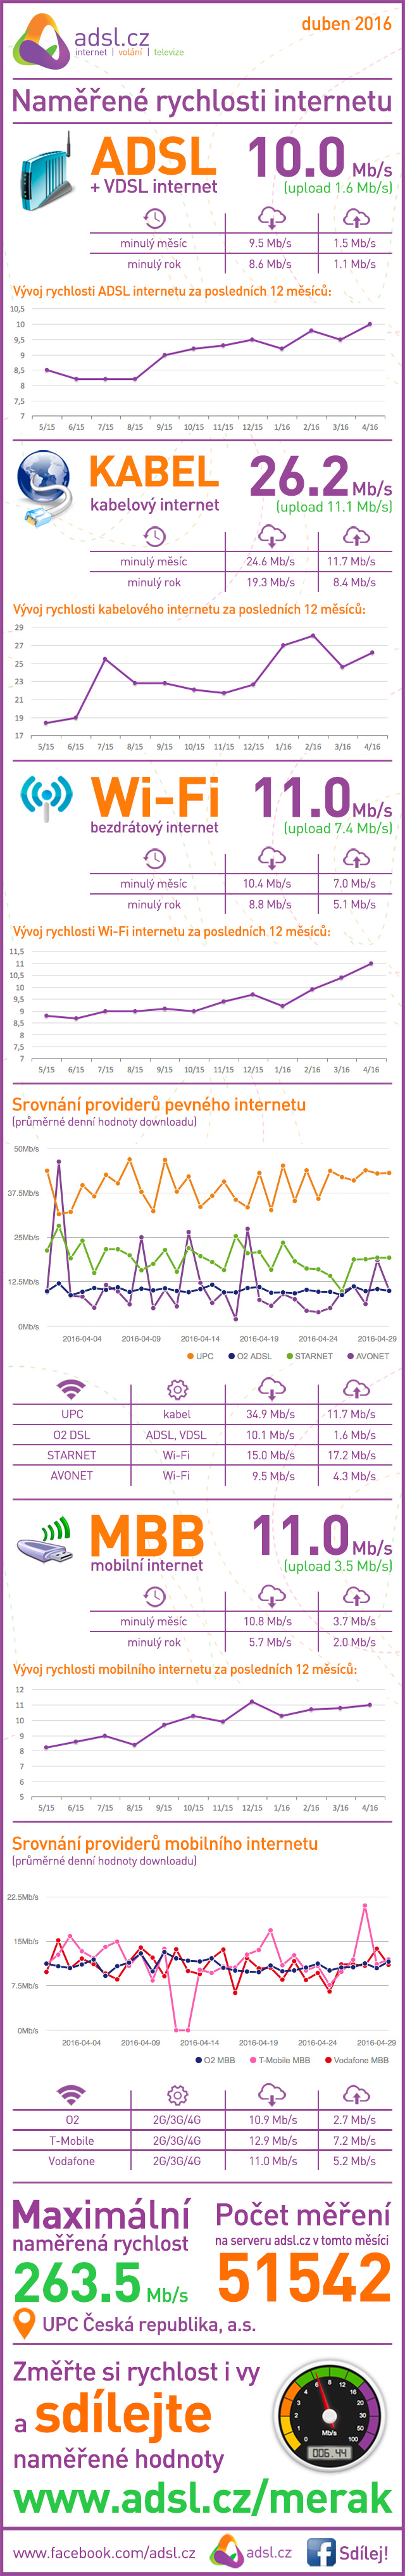 Rychlost internetu v březnu 2016 podle ADSl.cz